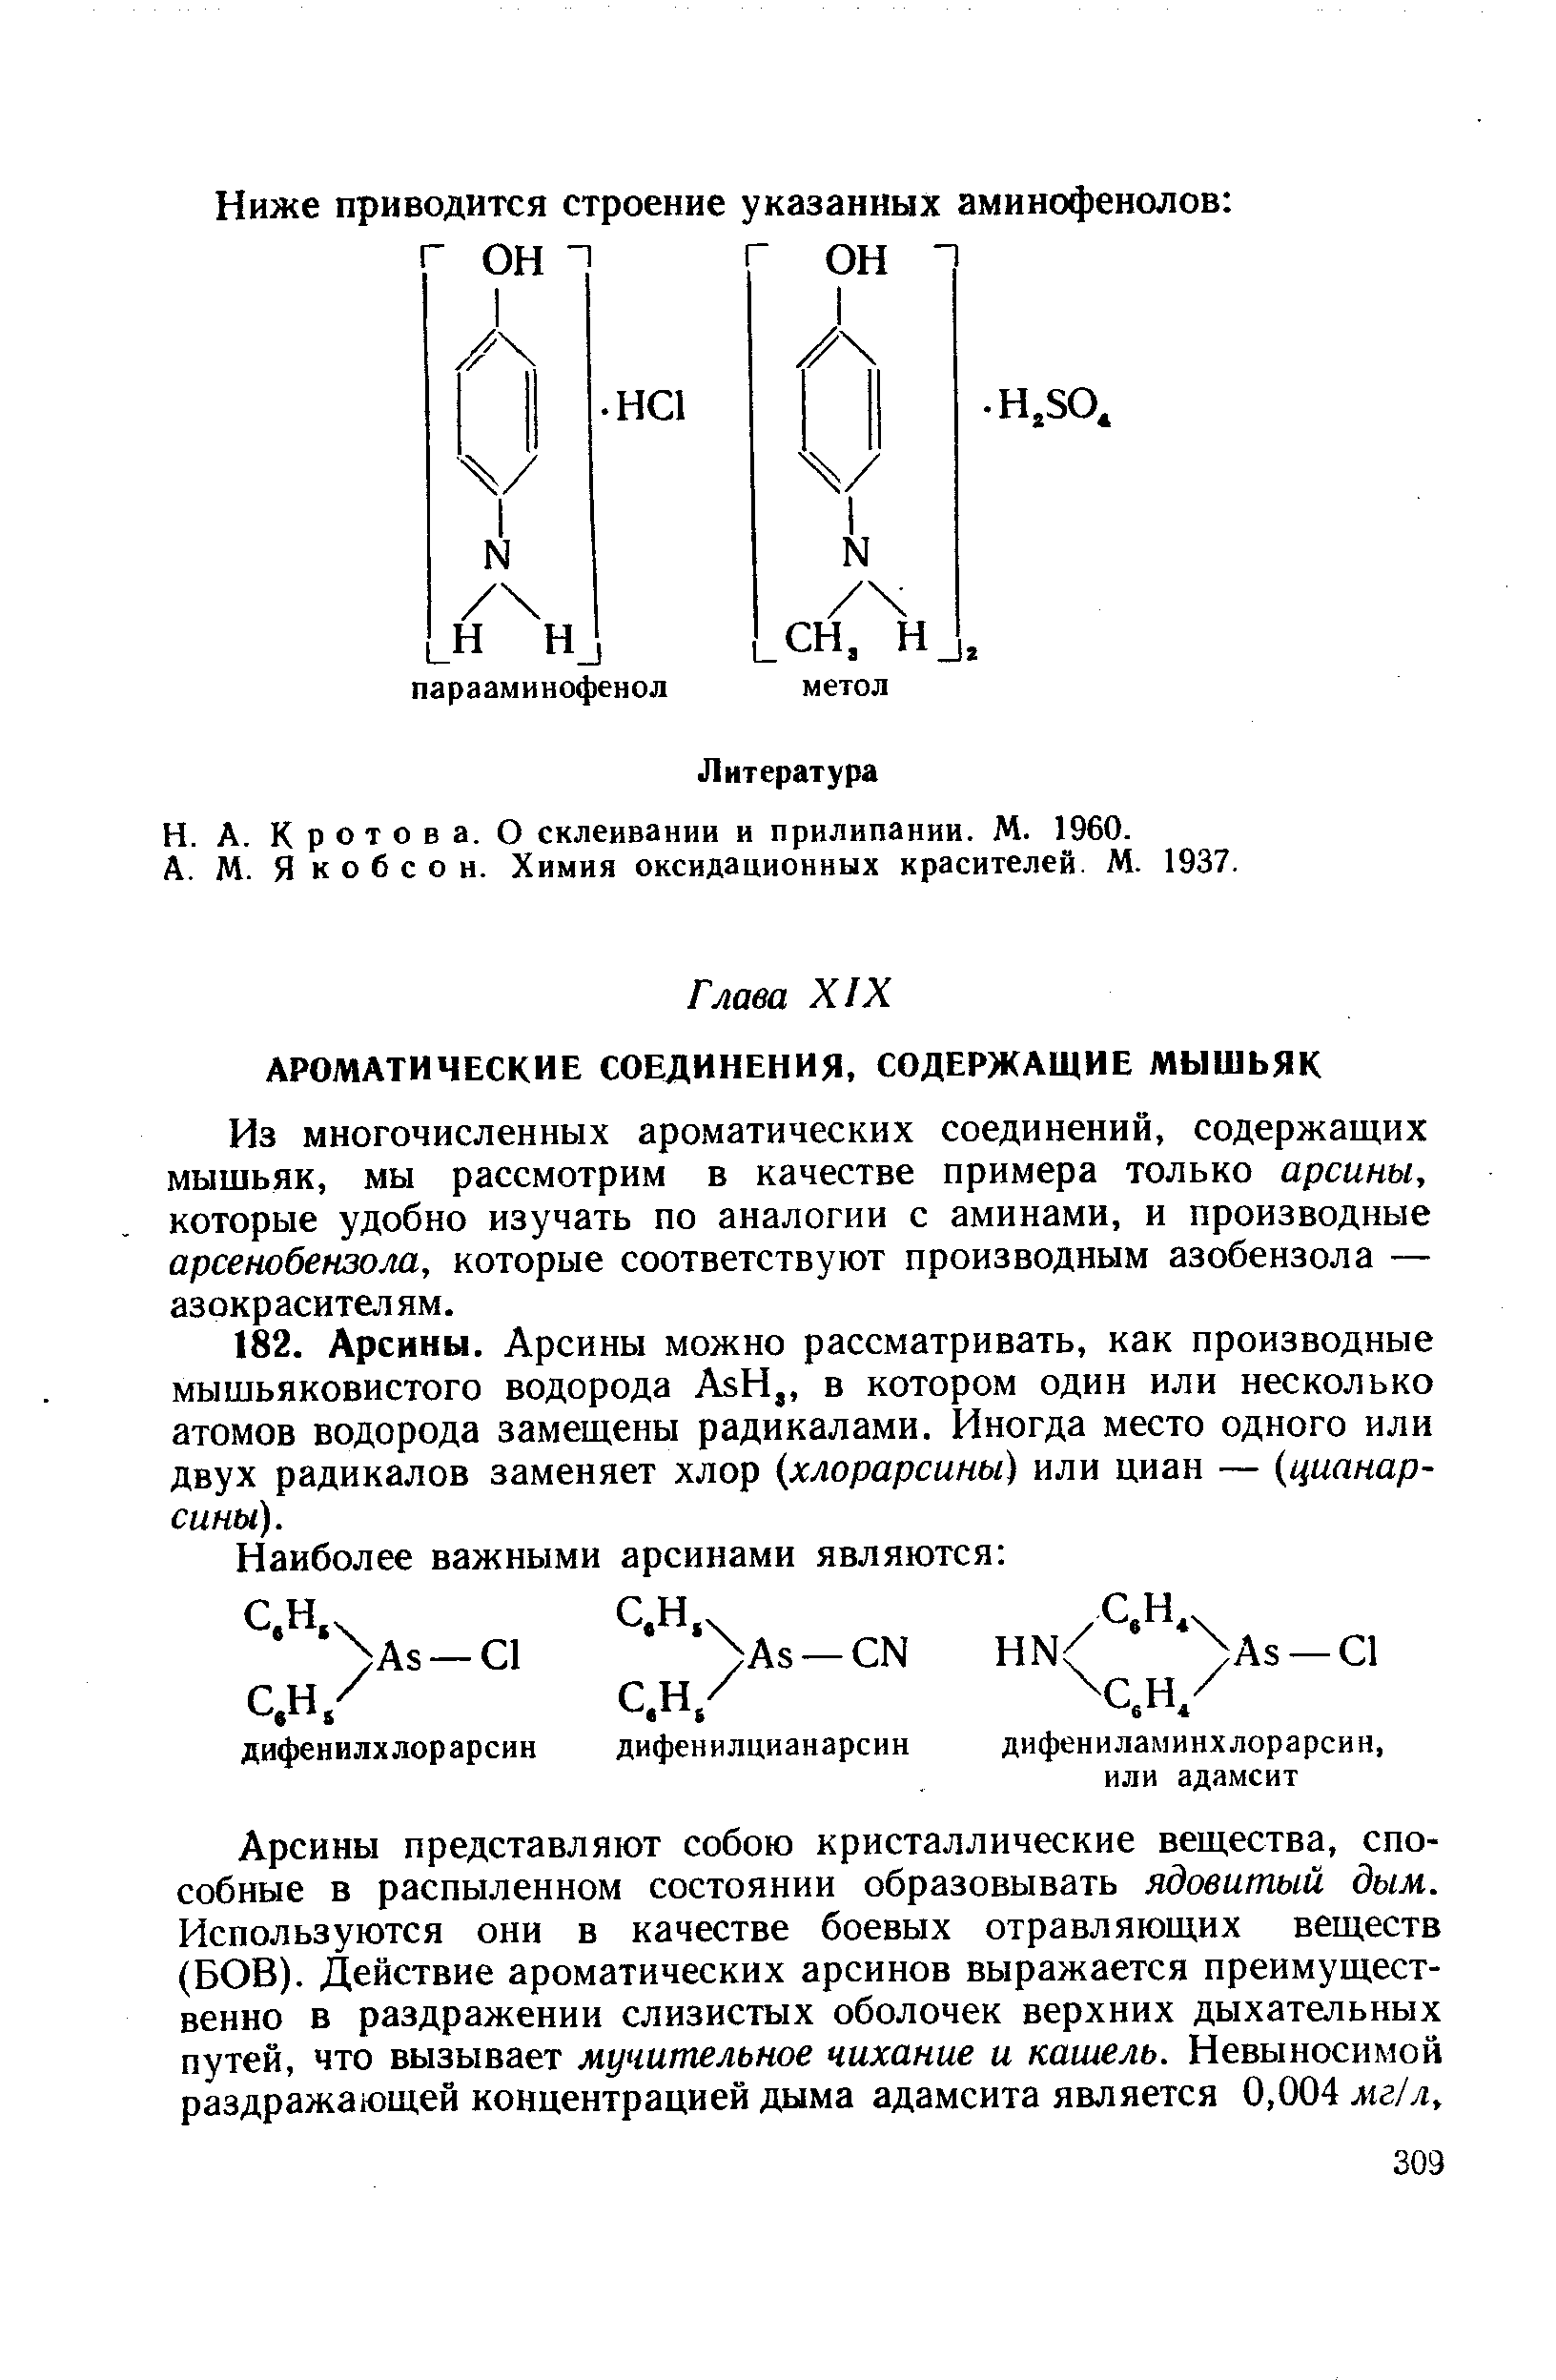 Якобсон. Химия оксидационных красителей. М. 1937.